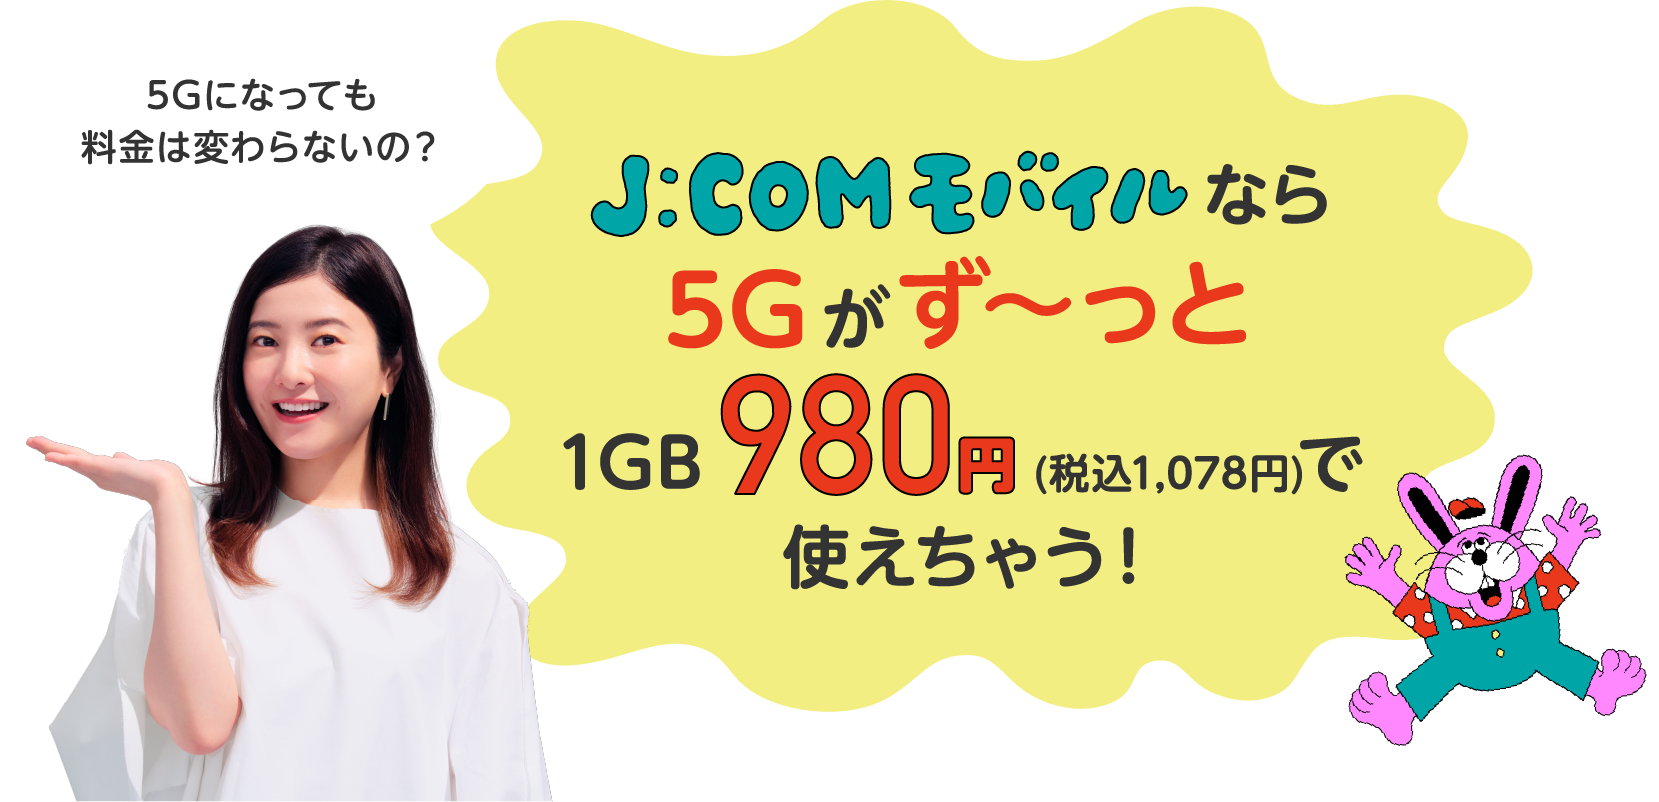 5Gになっても料金は変わらないの？ J:COMモバイルなら5Gがずーっと1GB980円（1,078円）で使えちゃう！